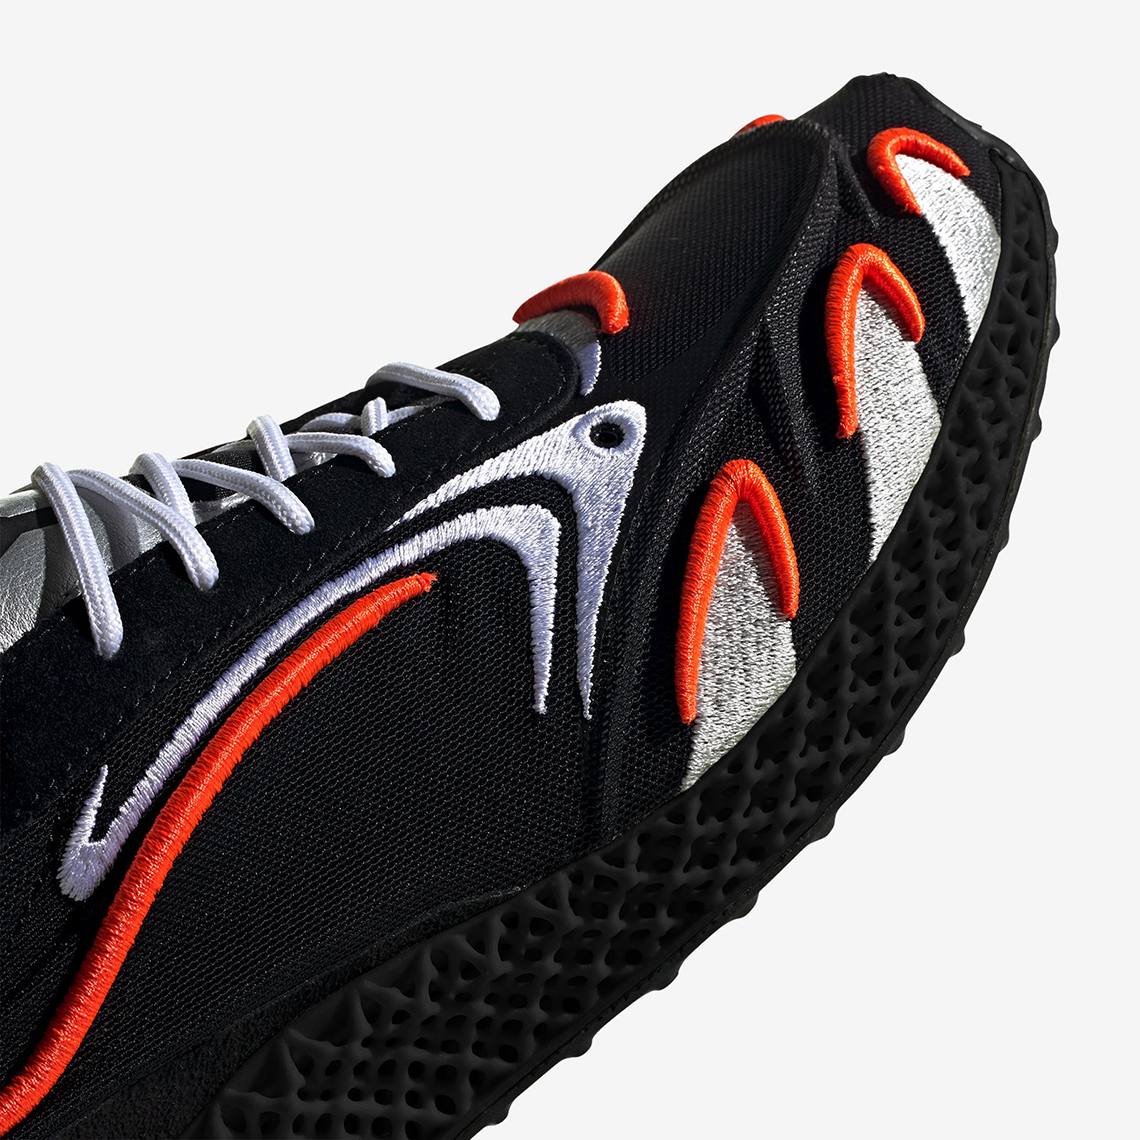 Adidas Y 3 Runner 4d Fu9208 Black Orange Release Date 6